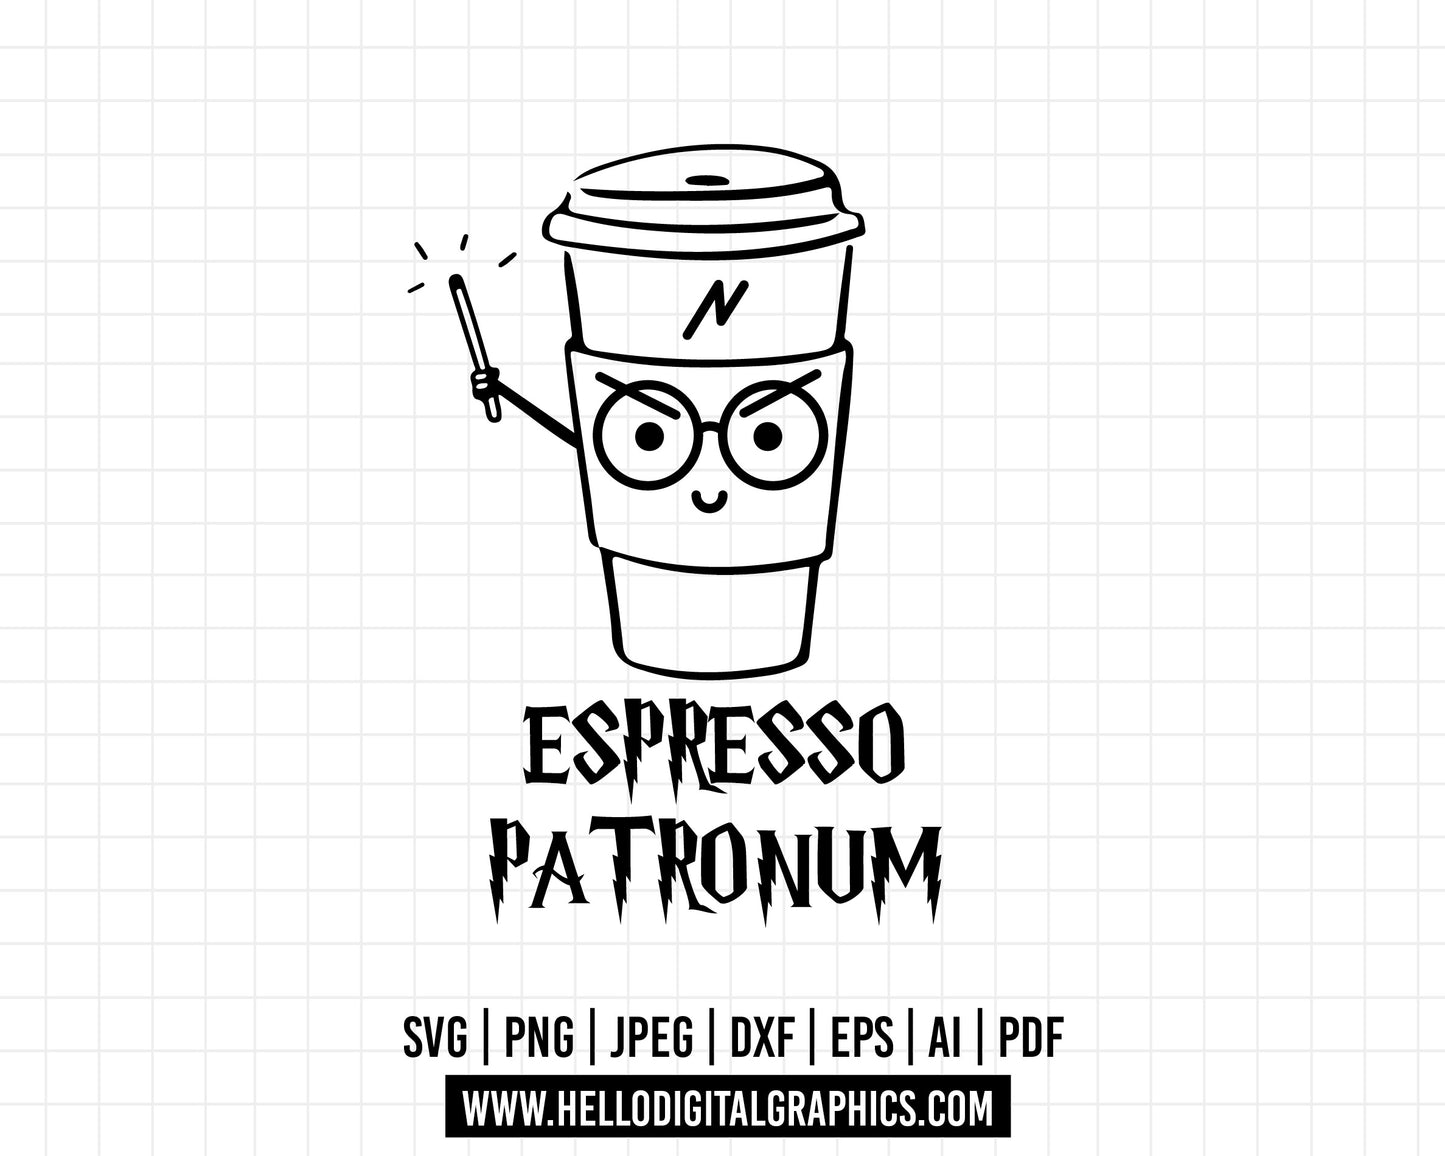 COD589- Espresso patronum svg, Harry Potter svg, Magic svg, Magic Wizard Svg, Svg for Shirts, Hogwarts SVG